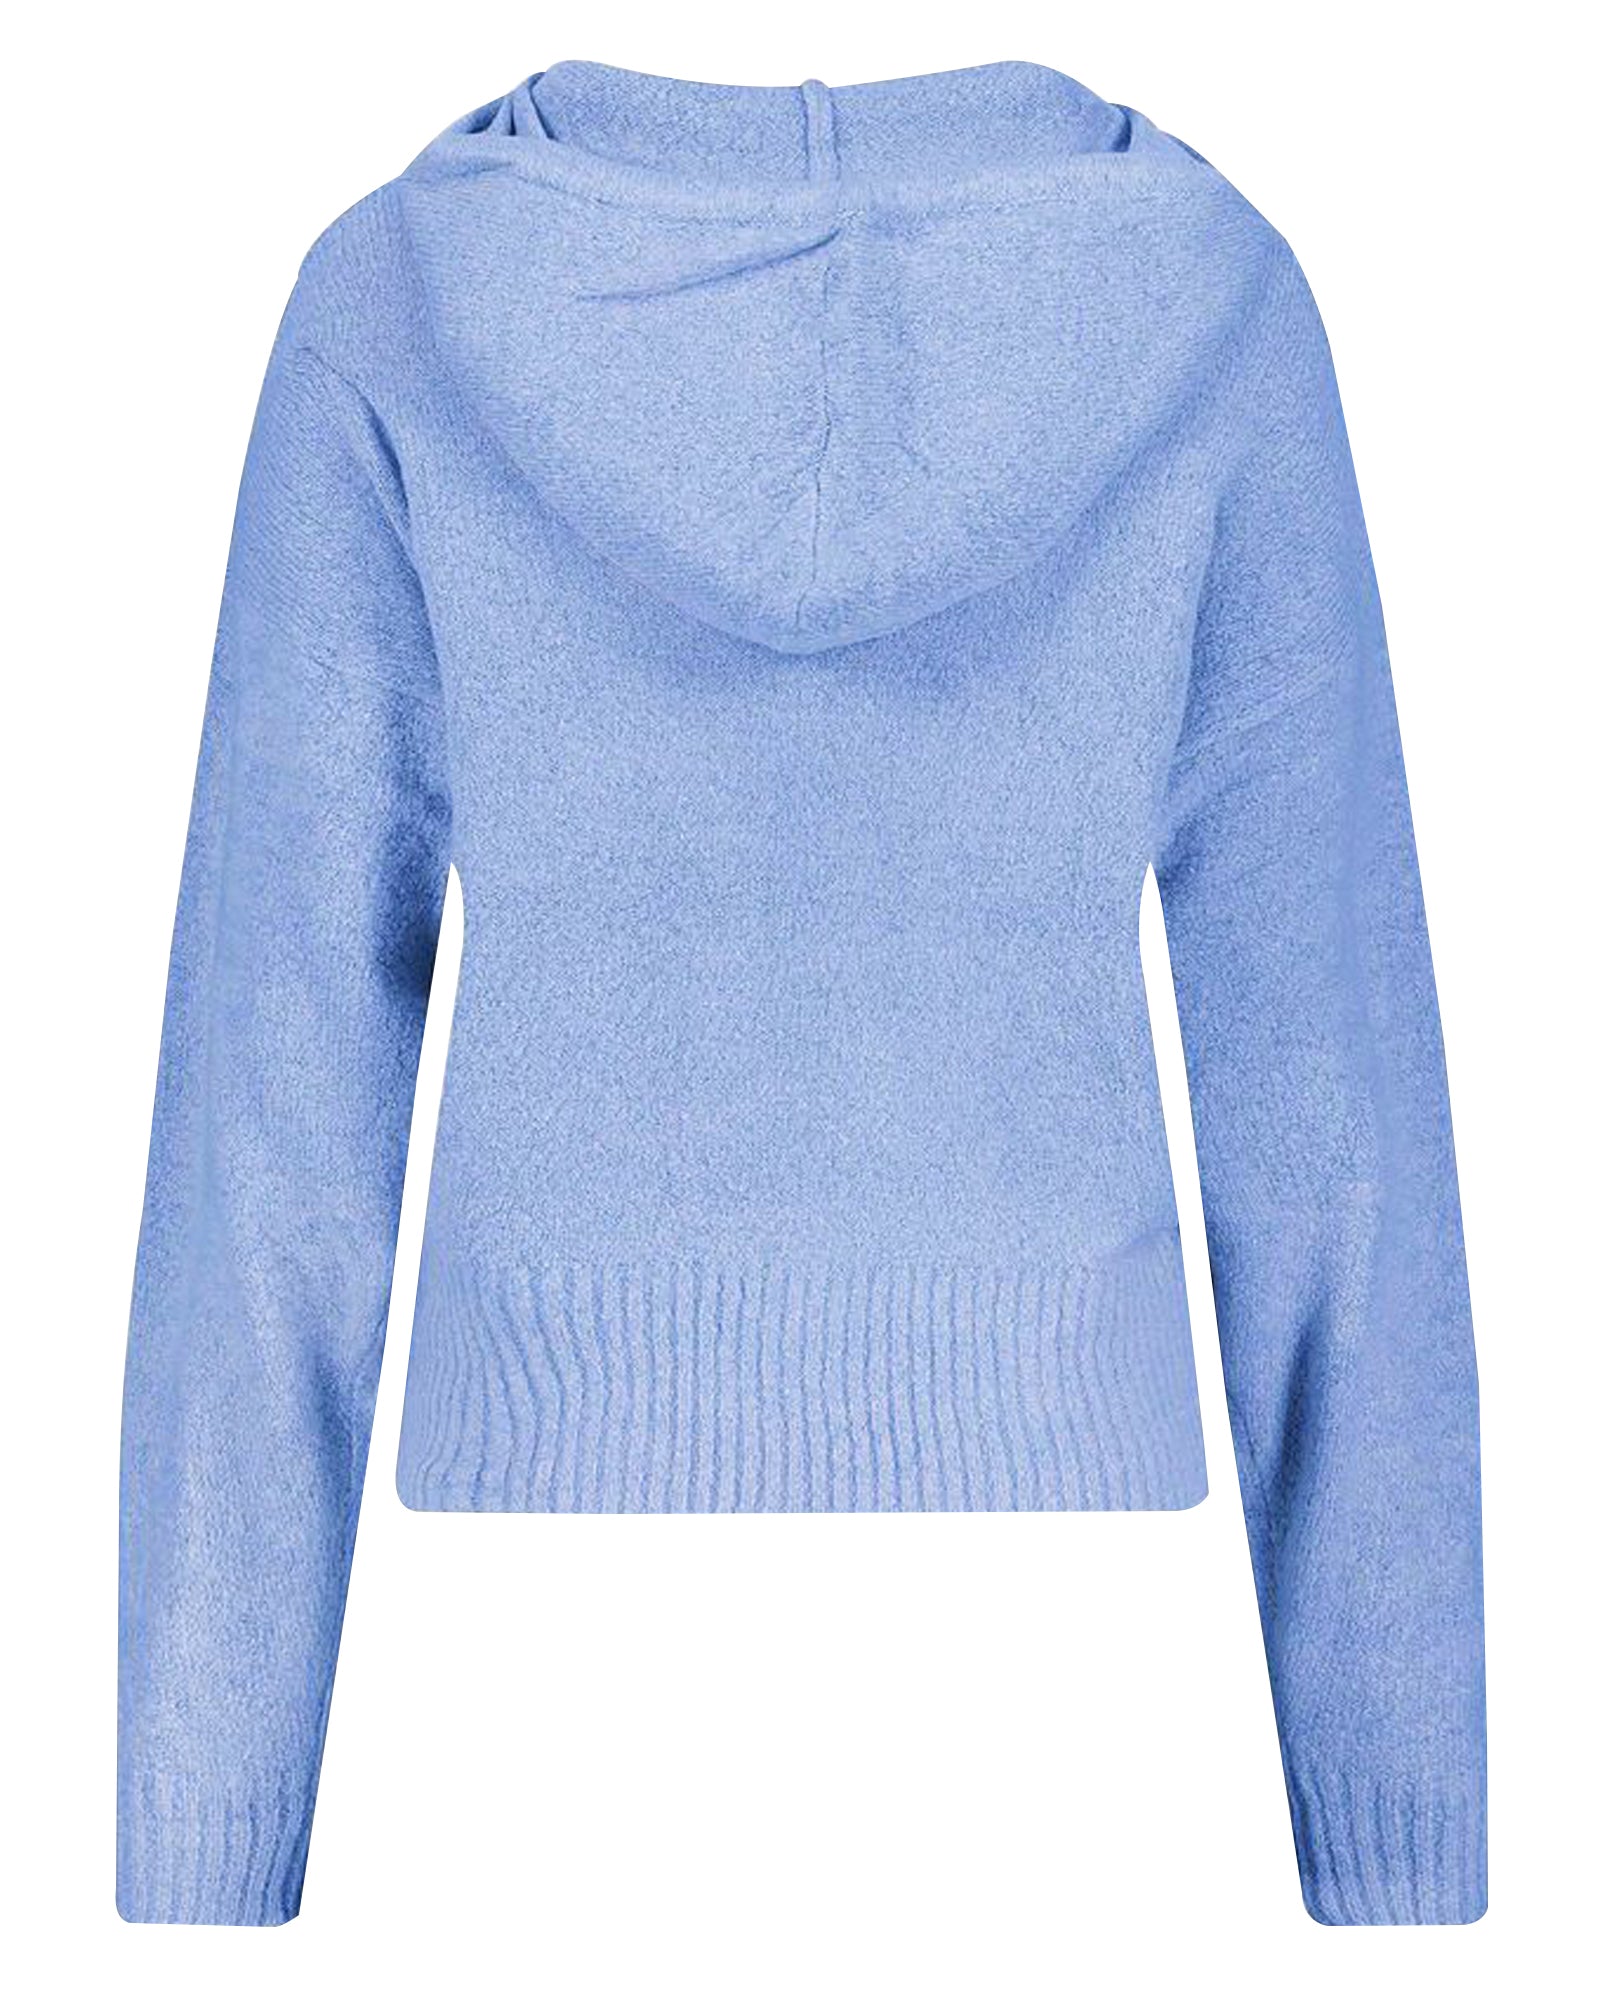 Women's Solid Knitted Hoodie Sweatshirt